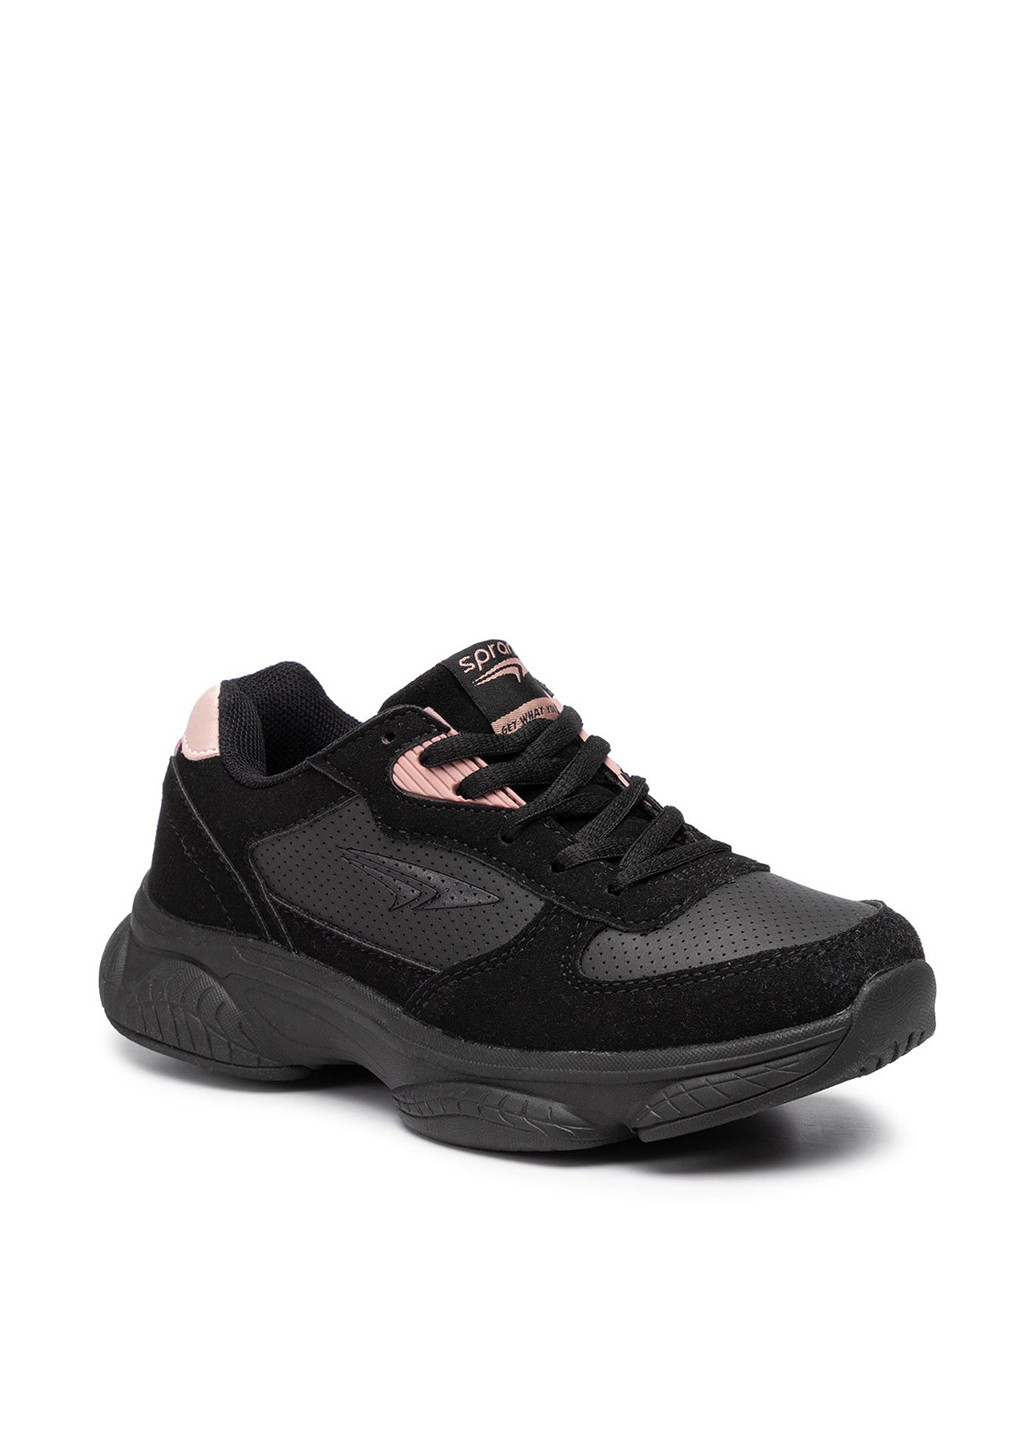 Черные демисезонные кросівки Sprandi CP40-8706J